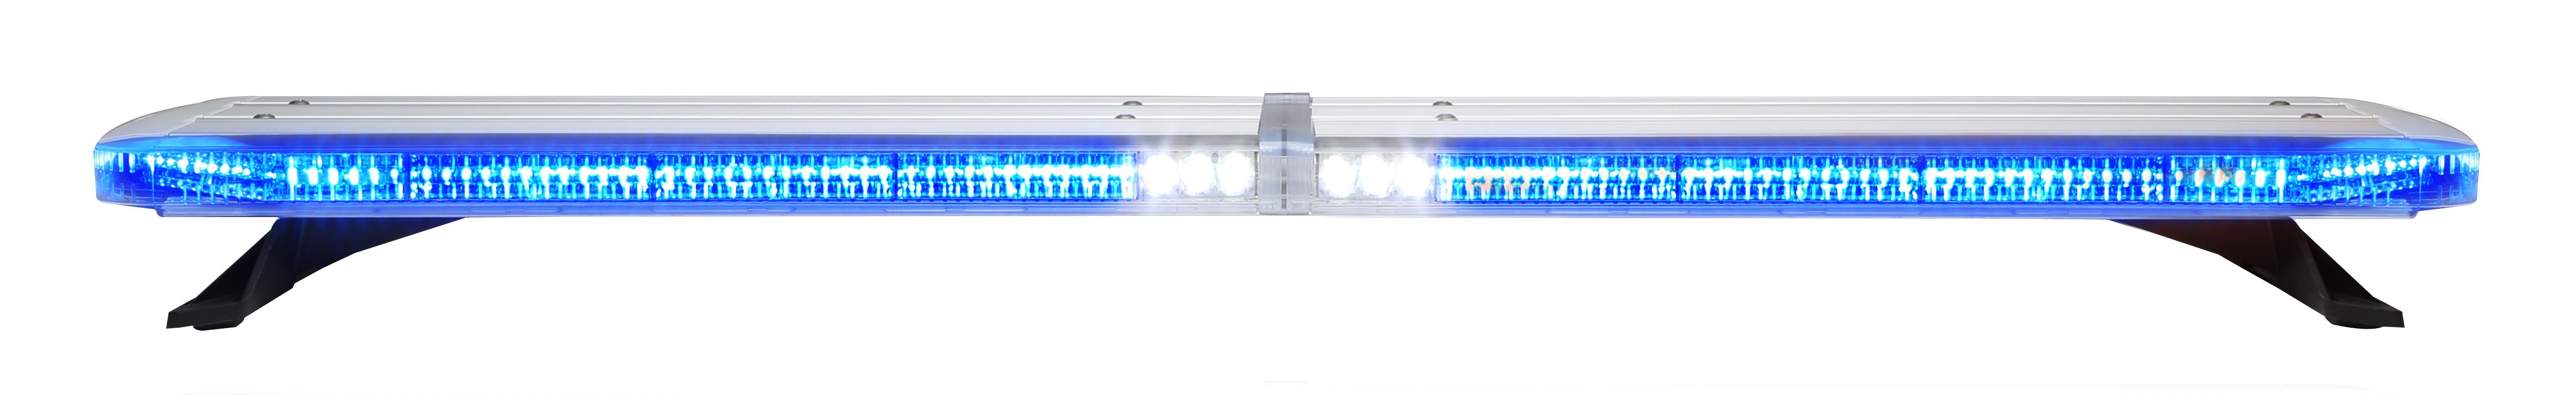 Изображение Whelen Legacy WeCan bzw. WeCanX ECE-R65 LED Lichtbalken auch DUO